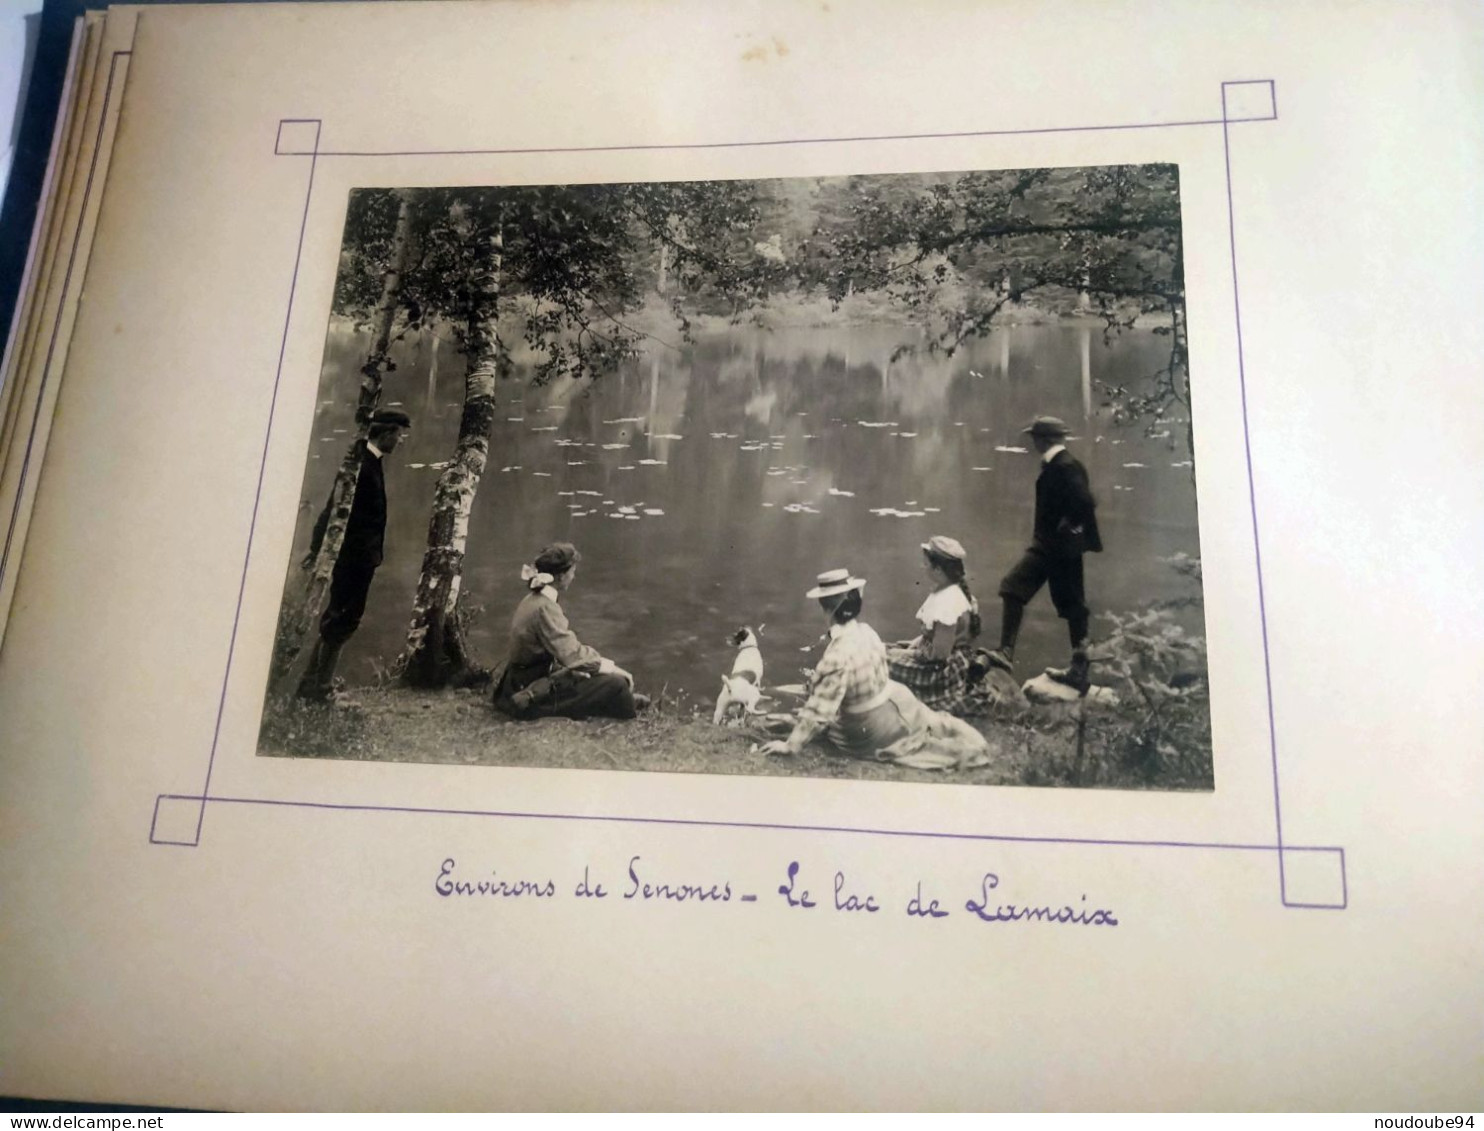 Album de 138 photos Senones Bar sur Aube Champlitte... Thèmes chasseurs fêtes scierie hommes femmes enfants militaires